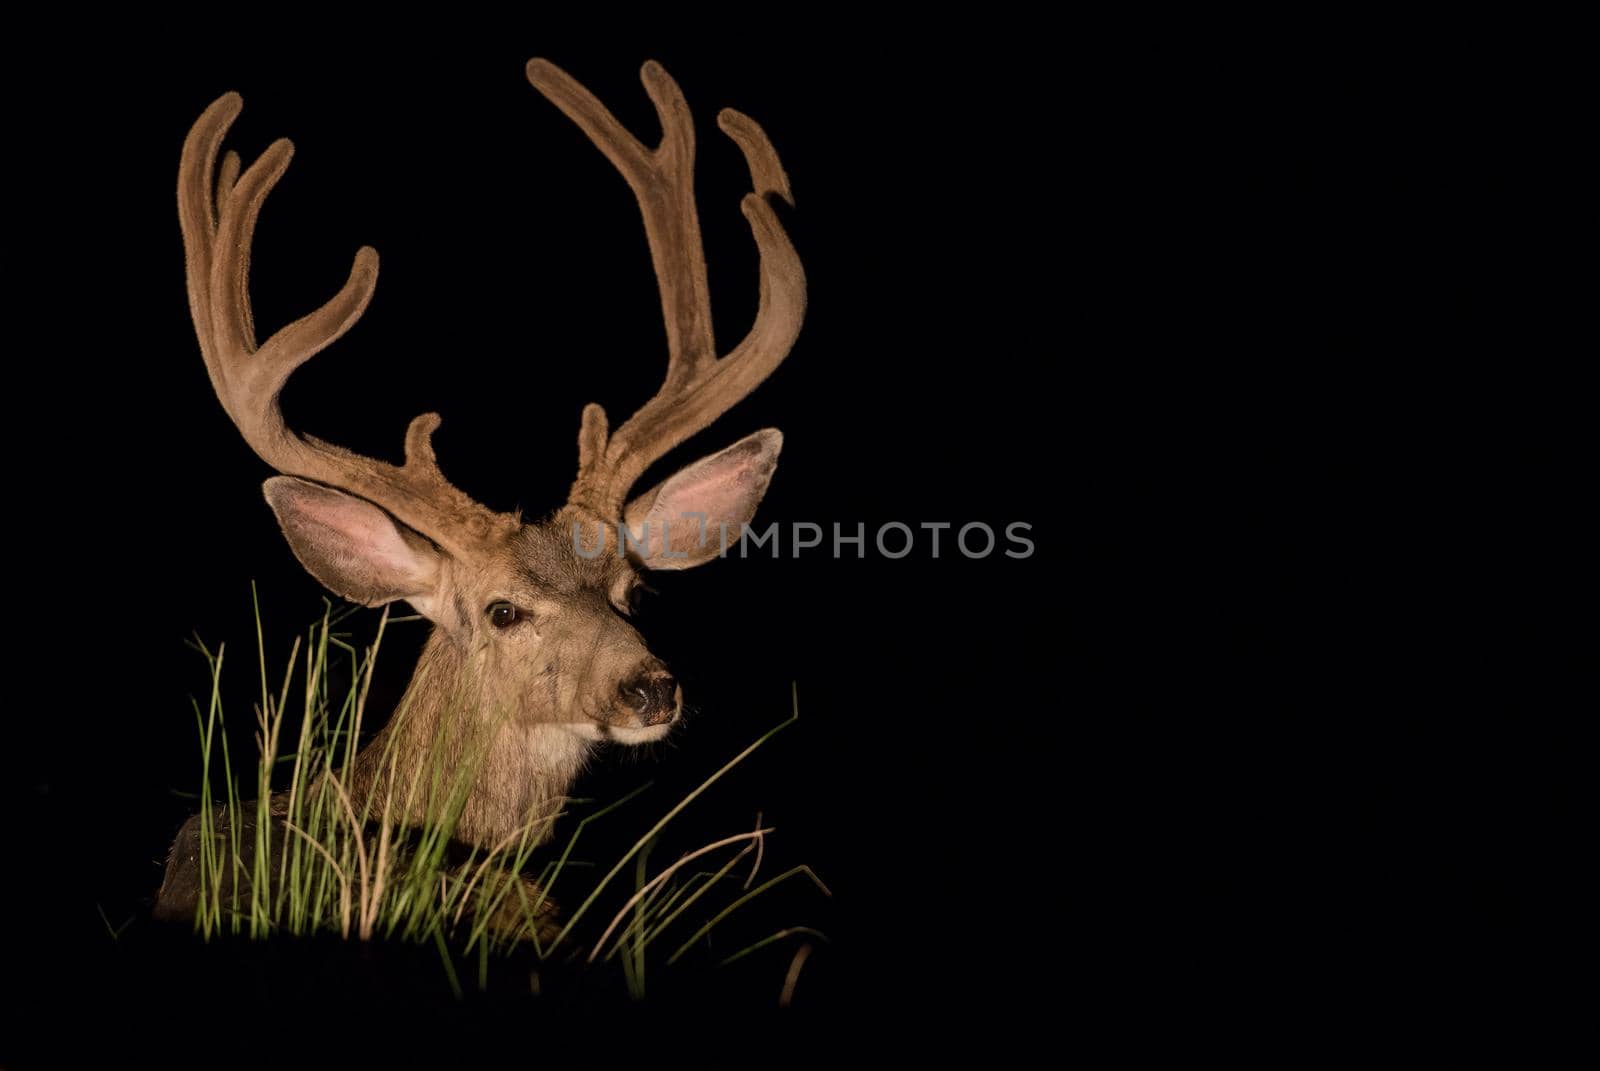 Mule deer head with large antlers by jyurinko